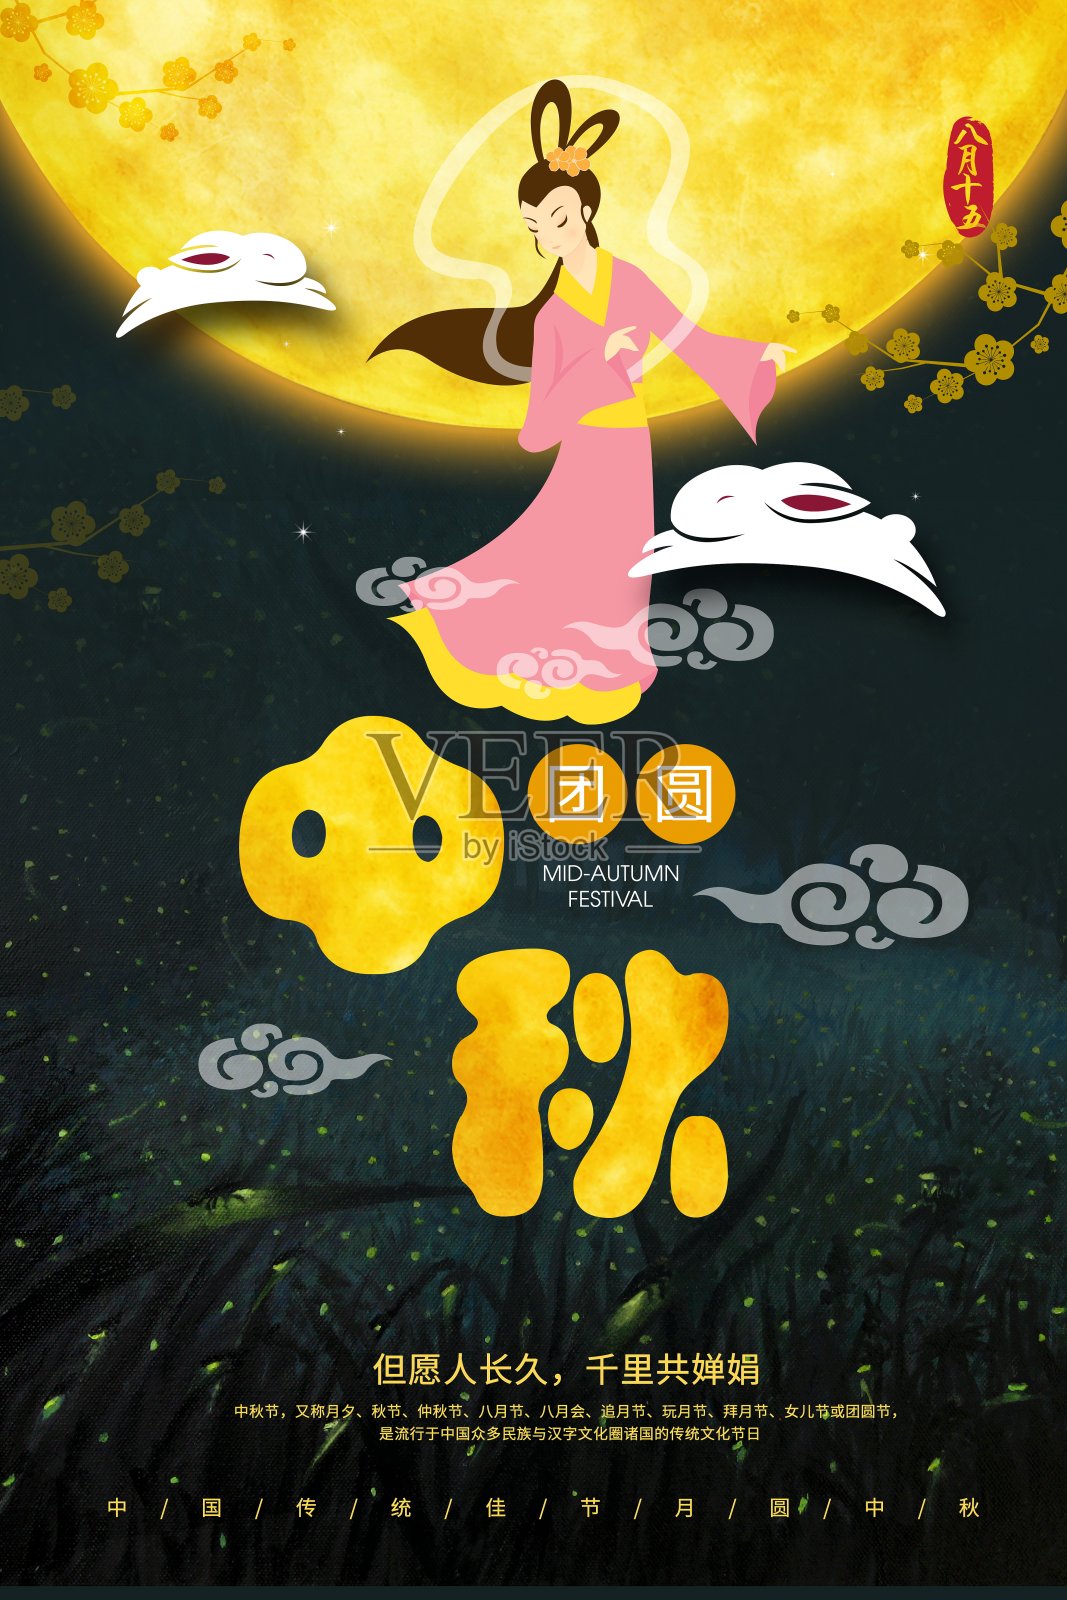 中国风中秋节传统节日海报设计模板素材